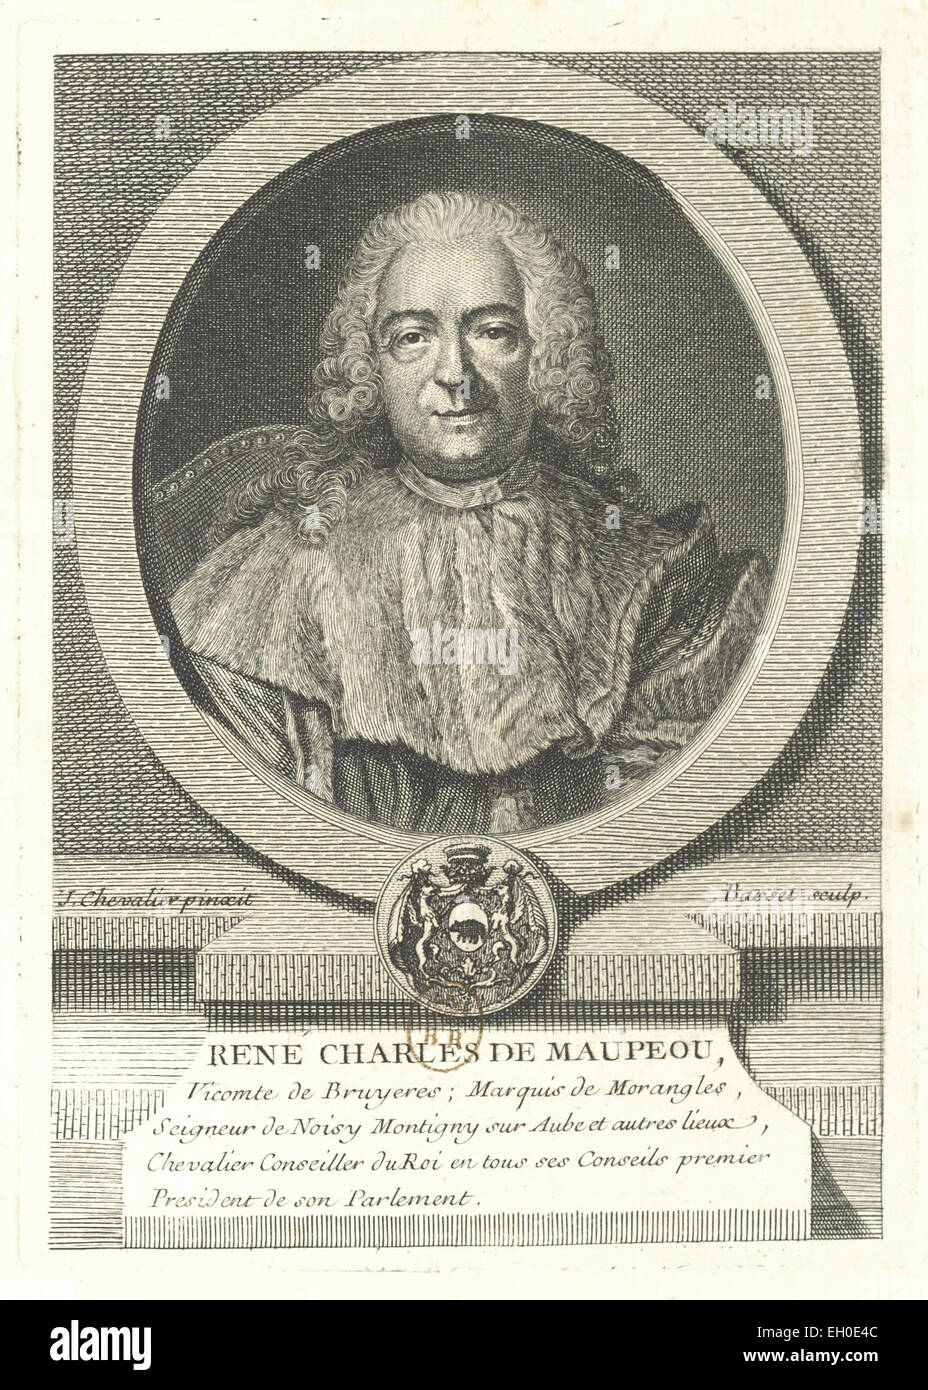 René Charles de Maupeou (1688-1755), Magistrat, Premier Président du Parlement de Paris, Chancelier de France, Garde des Sceaux Sous Louis XV. Stockfoto